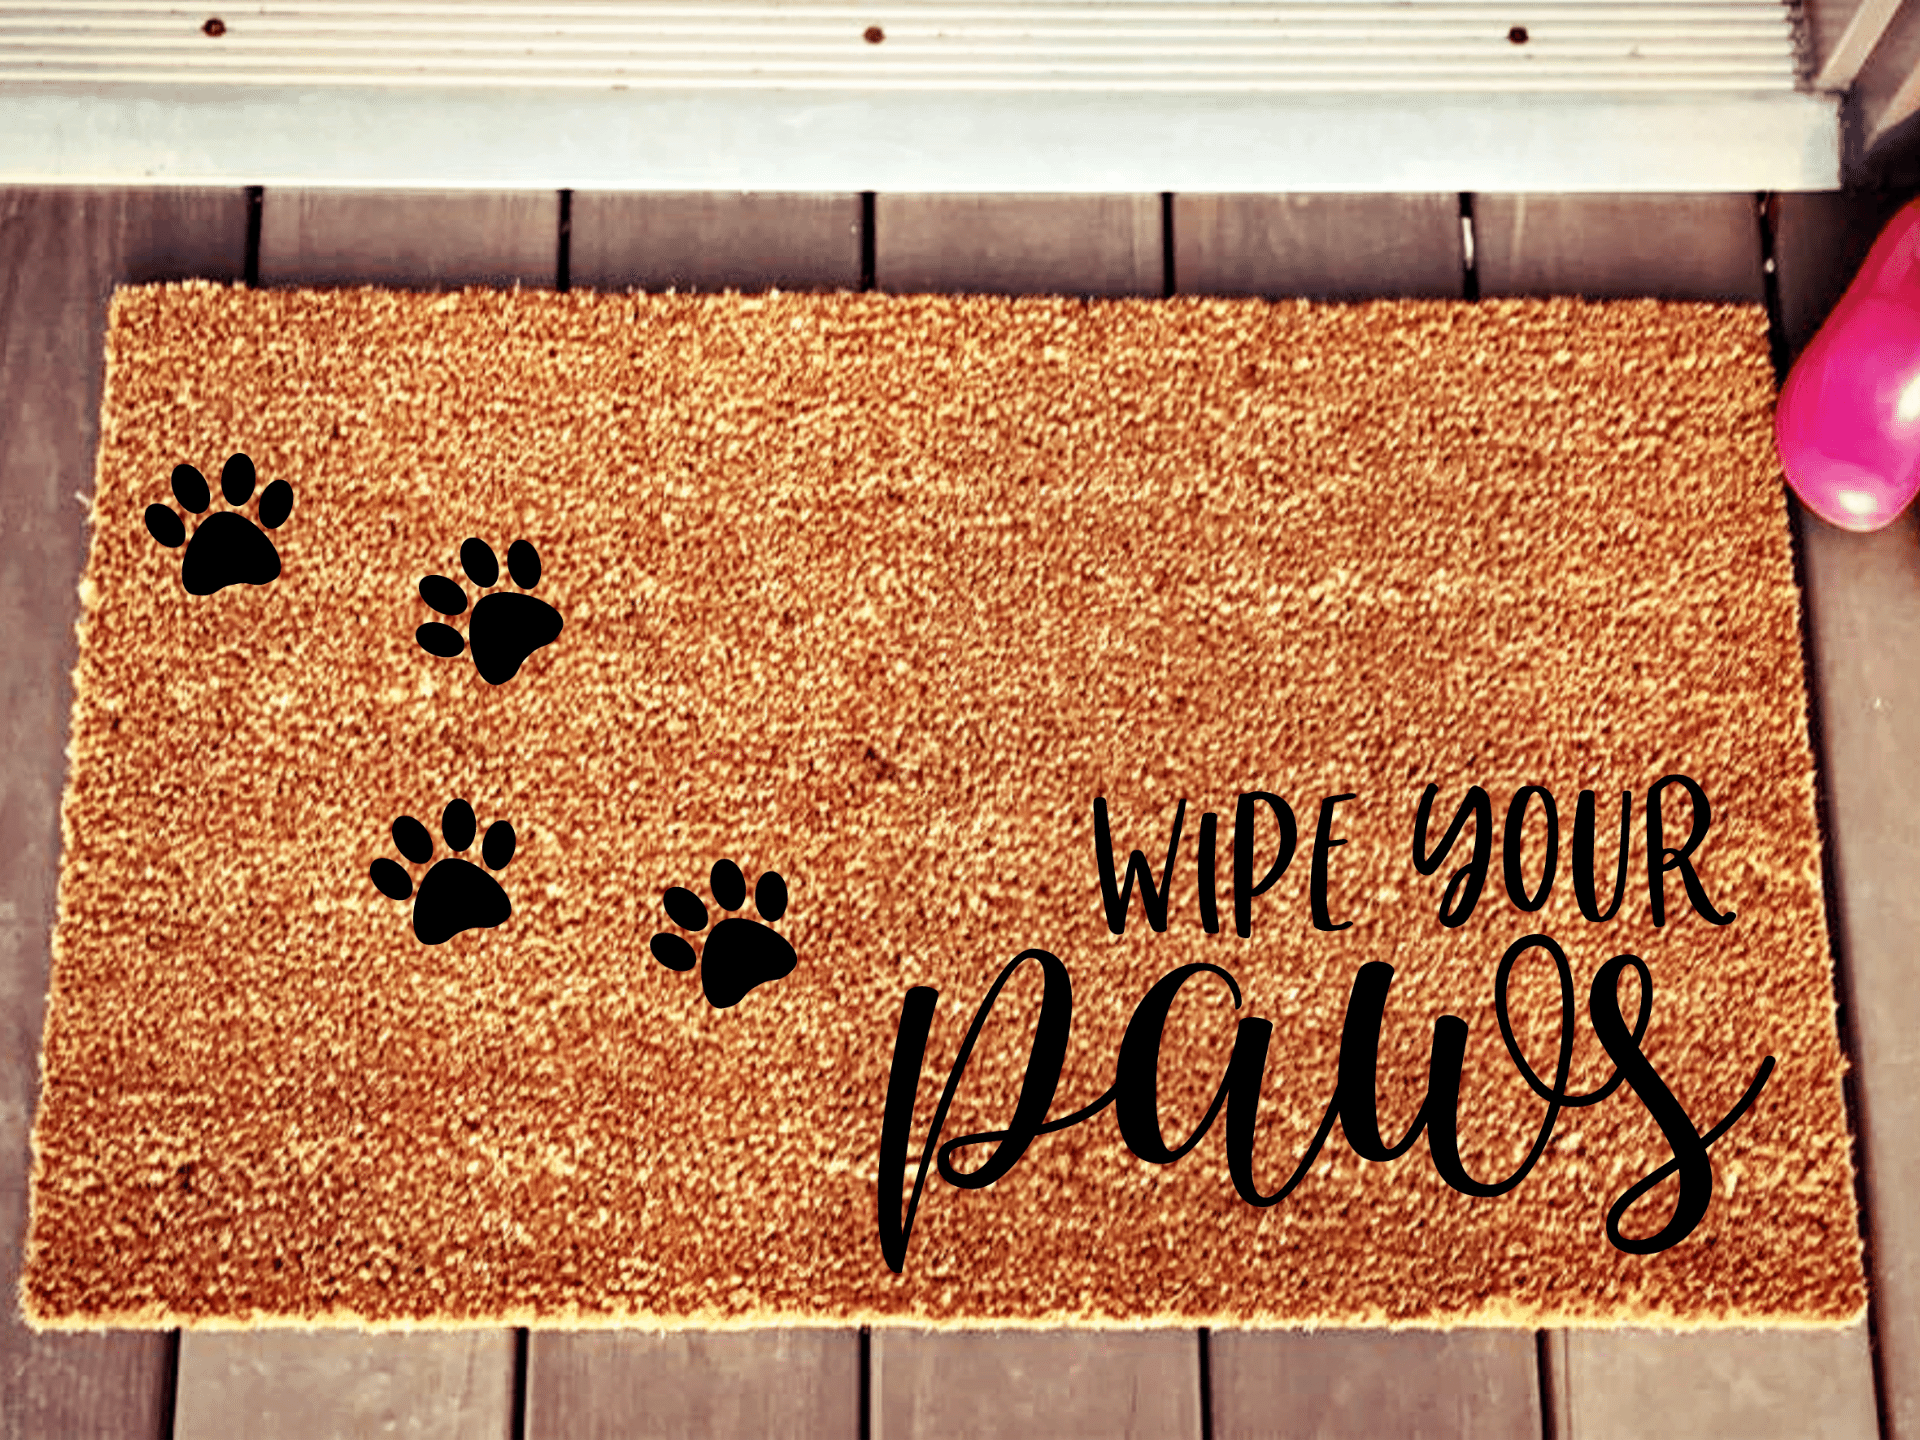 Wipe your paws cat or dog doormat – Personalised Doormats